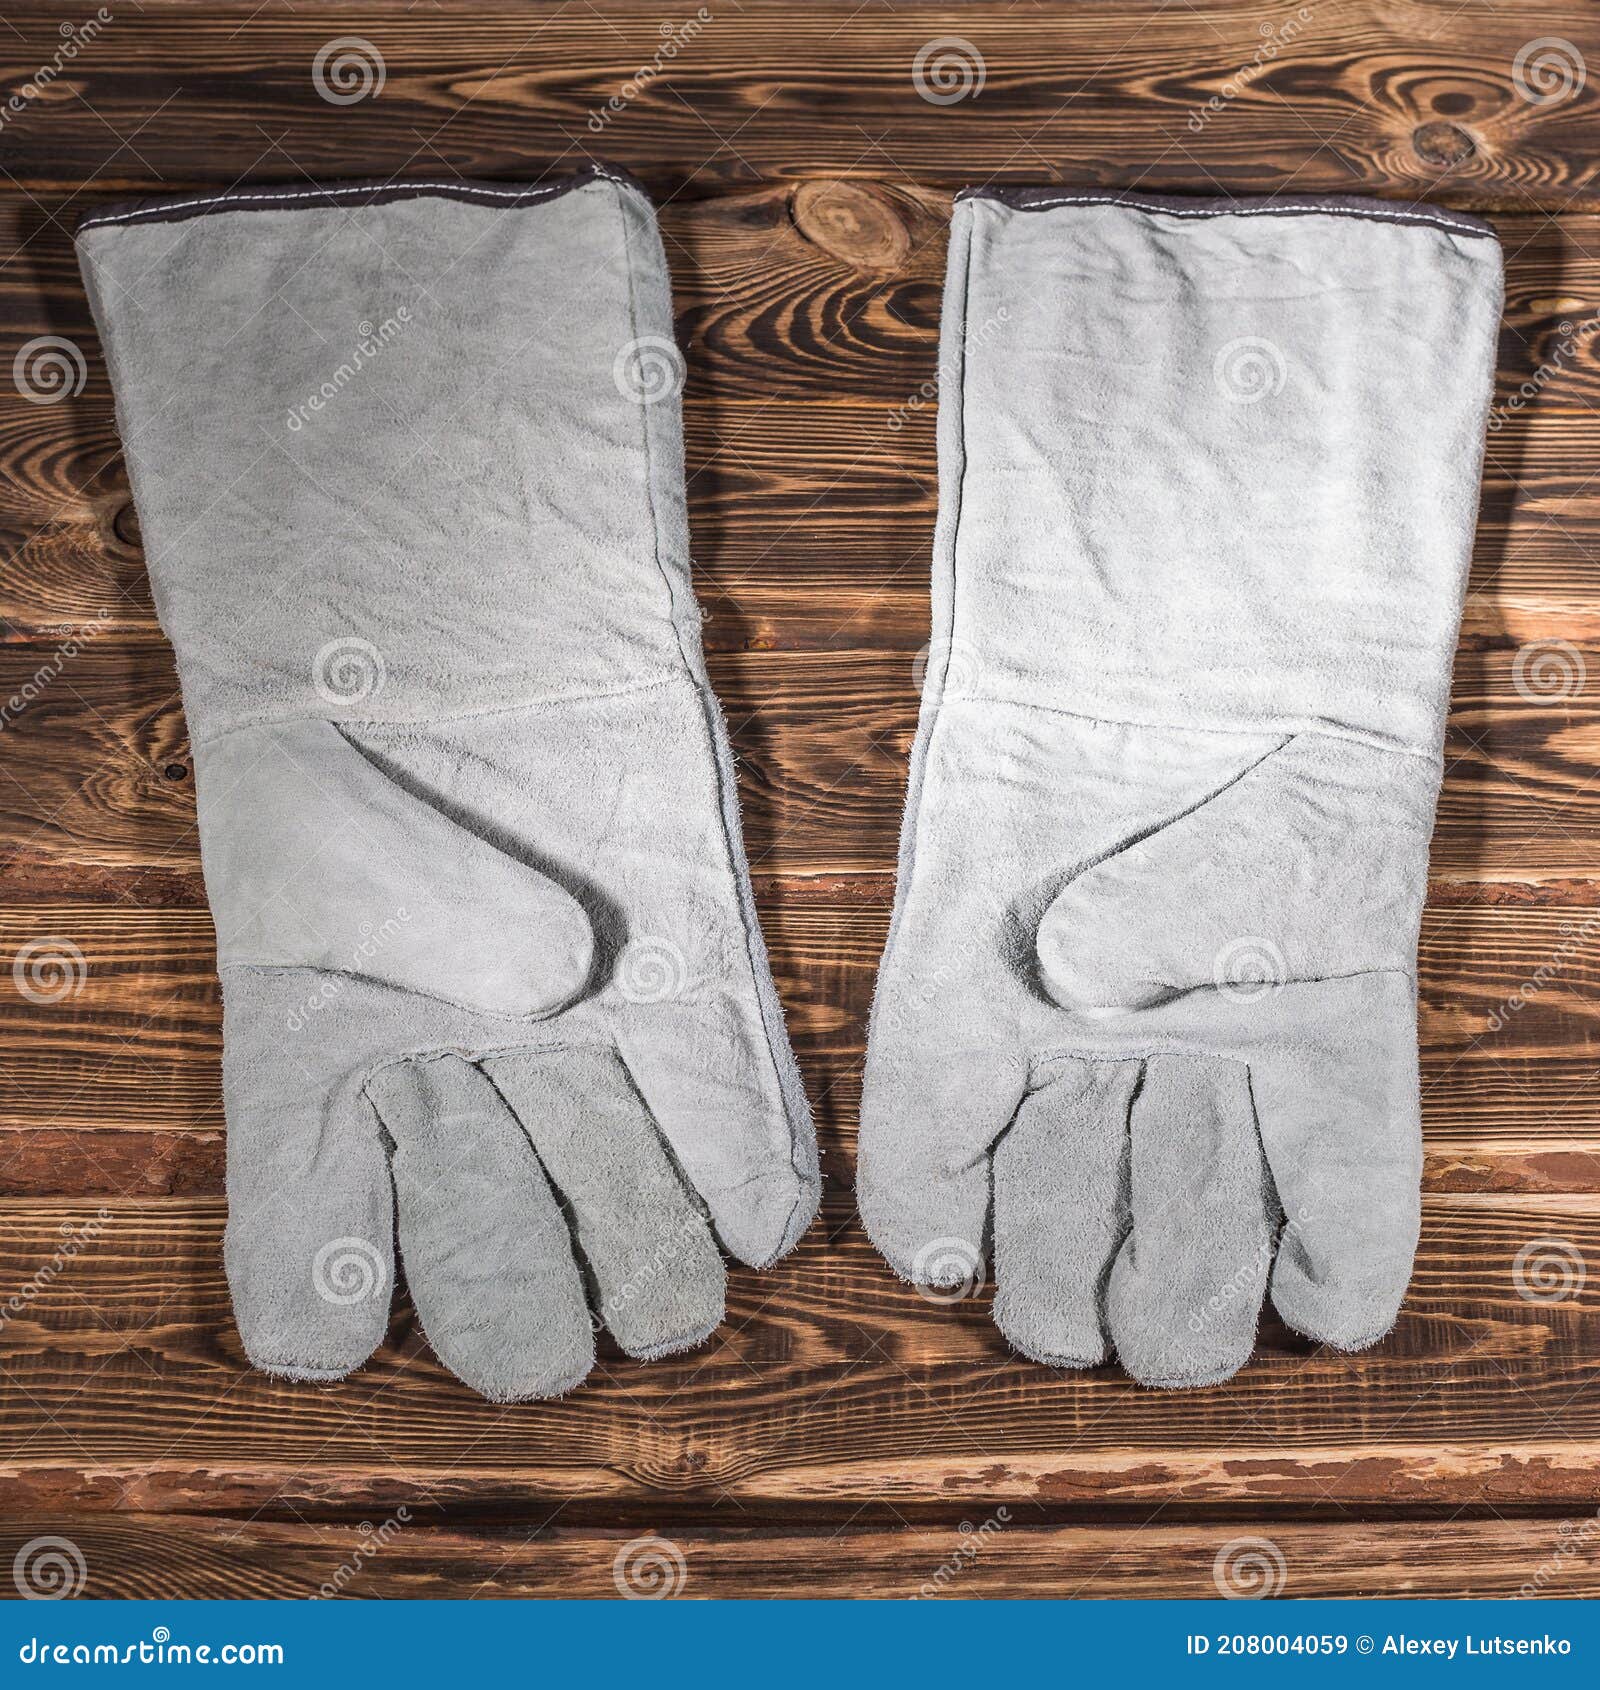 λευκά δερμάτινα γάντια ασφαλείας σε ξύλινο φόντο. φωτογραφία στούντιο με  έντονο φωτισμό Στοκ Εικόνα - εικόνα από multipurpose, accidence: 208004059